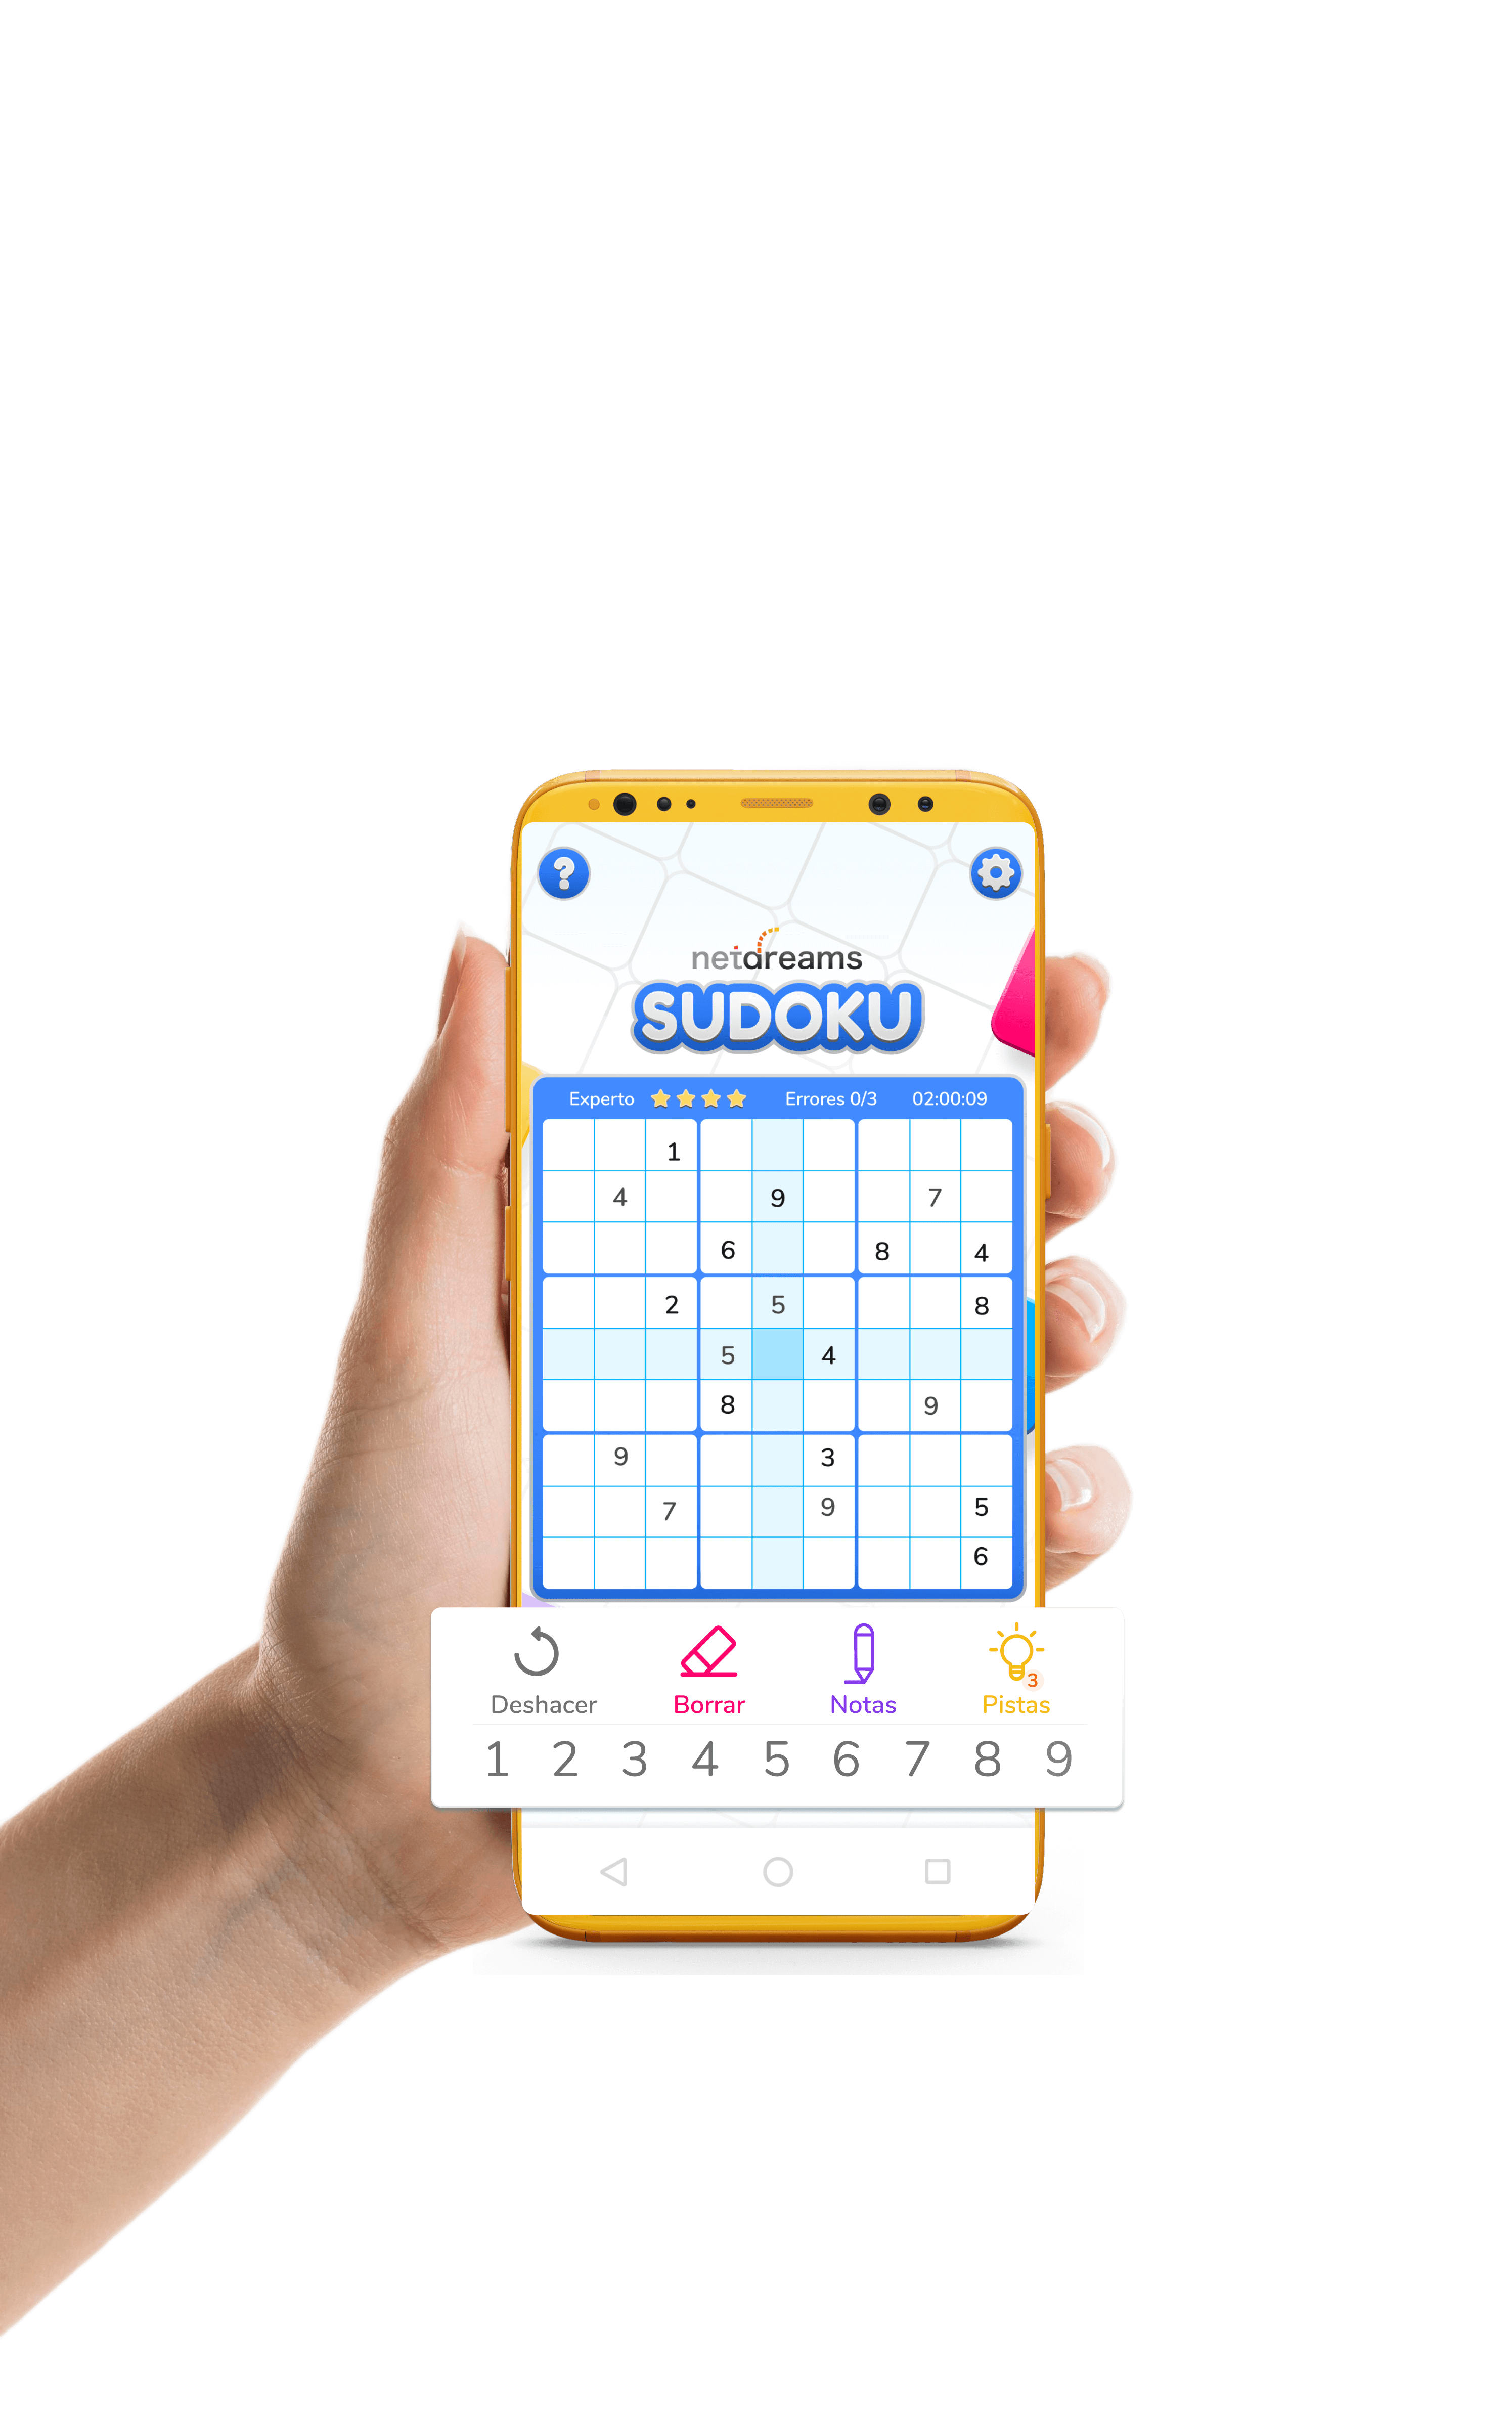 Jogo Sudoku Netdreams no seu celular